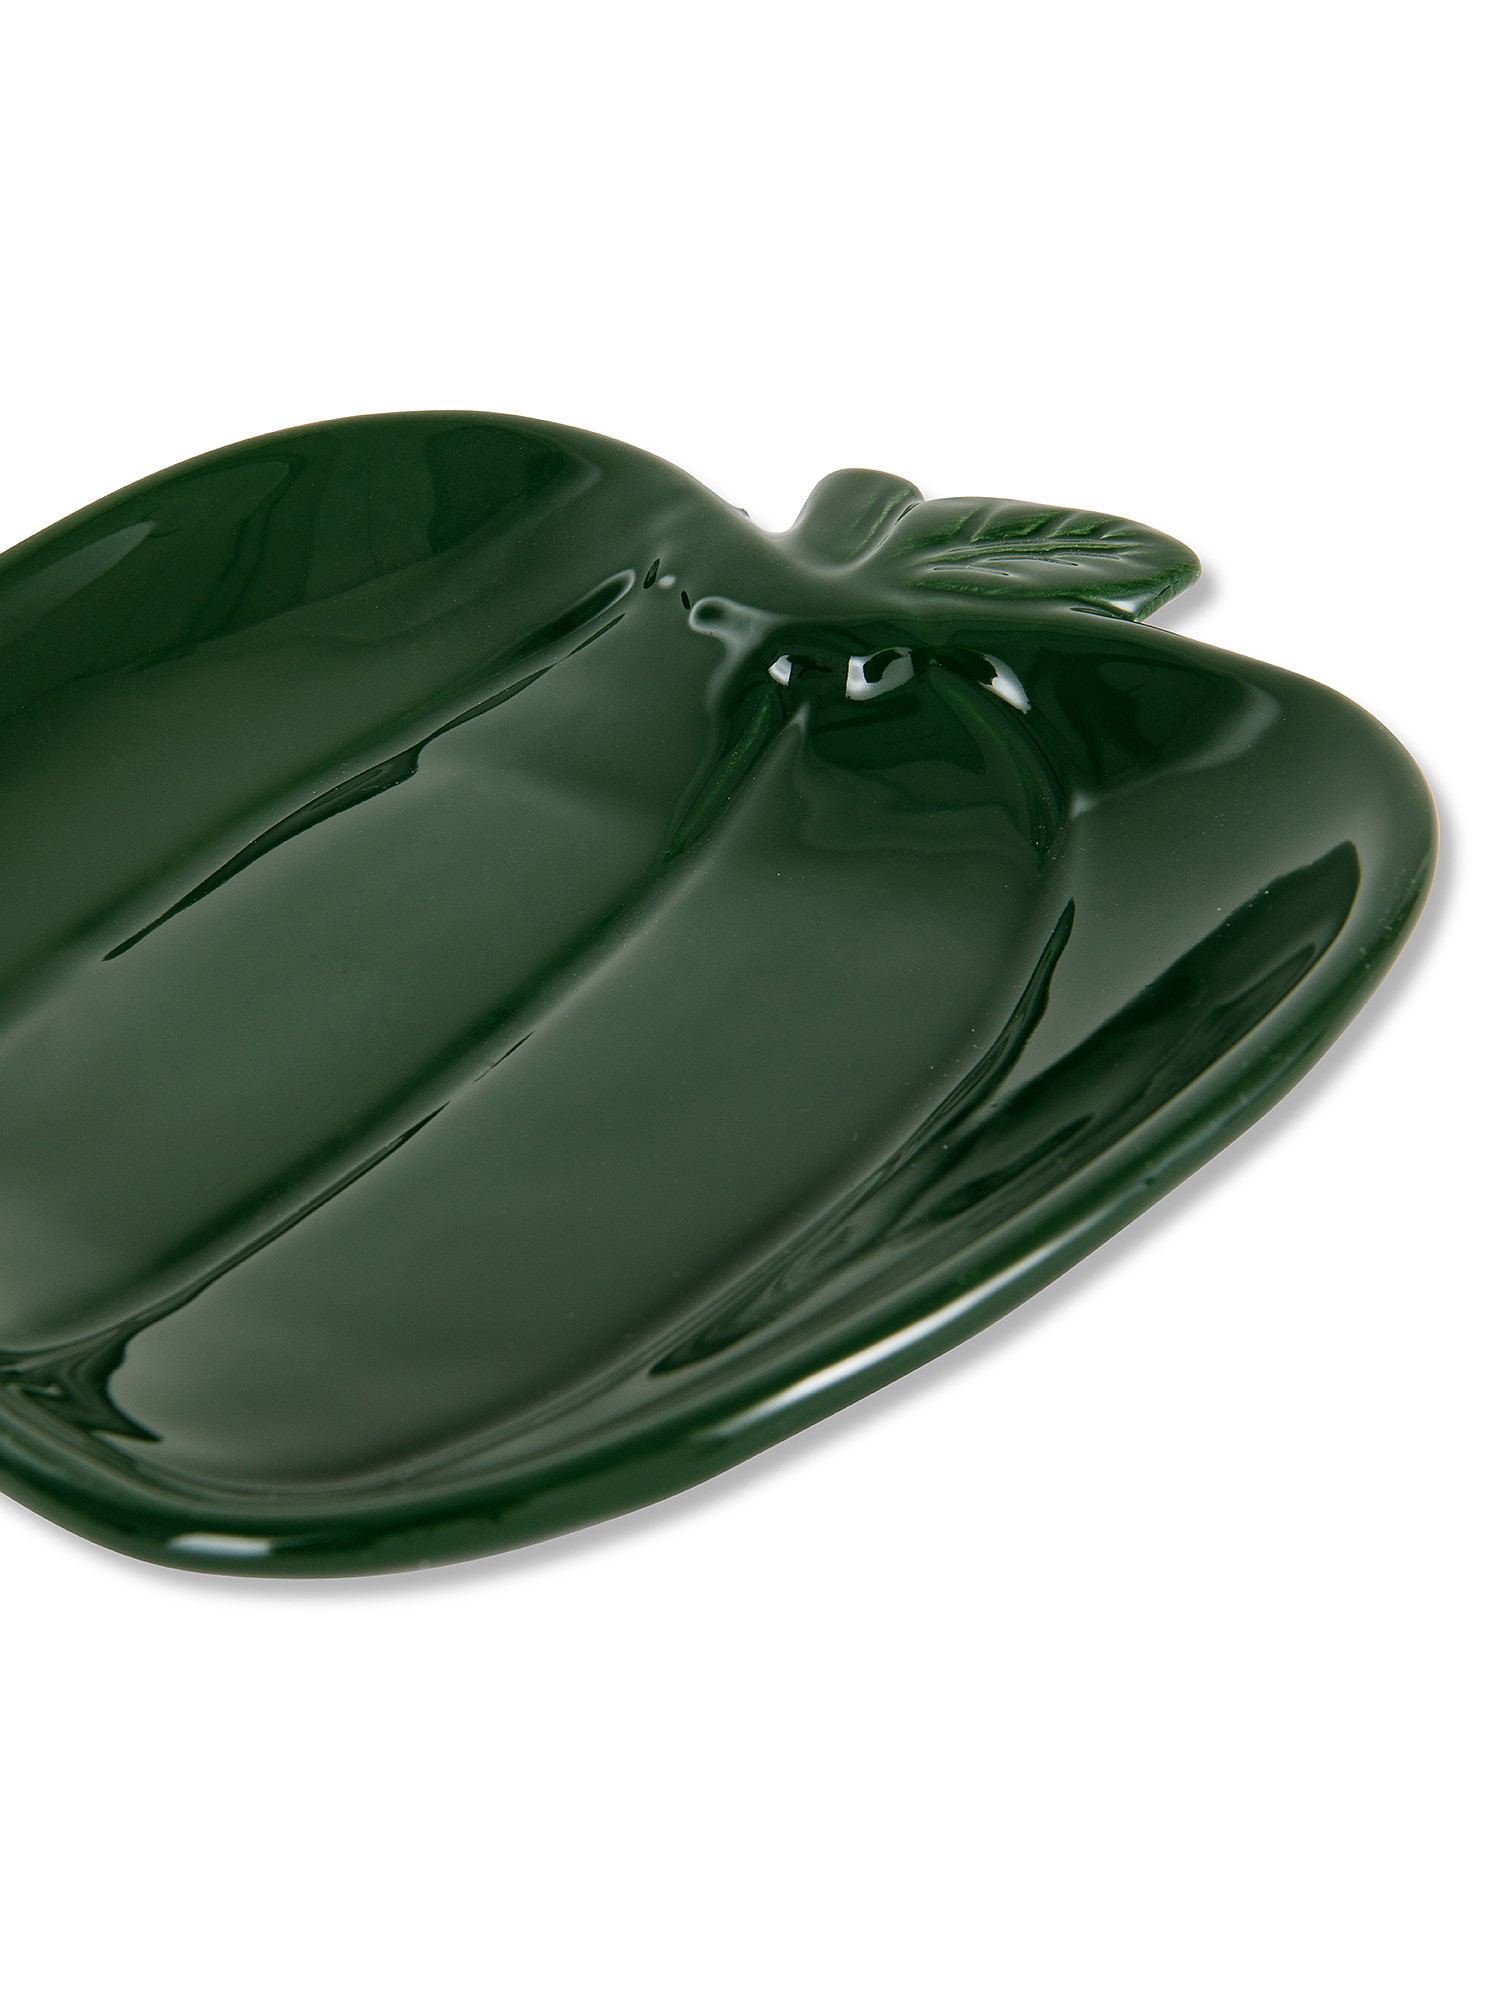 Pepper-shaped ceramic saucer, Green, large image number 1